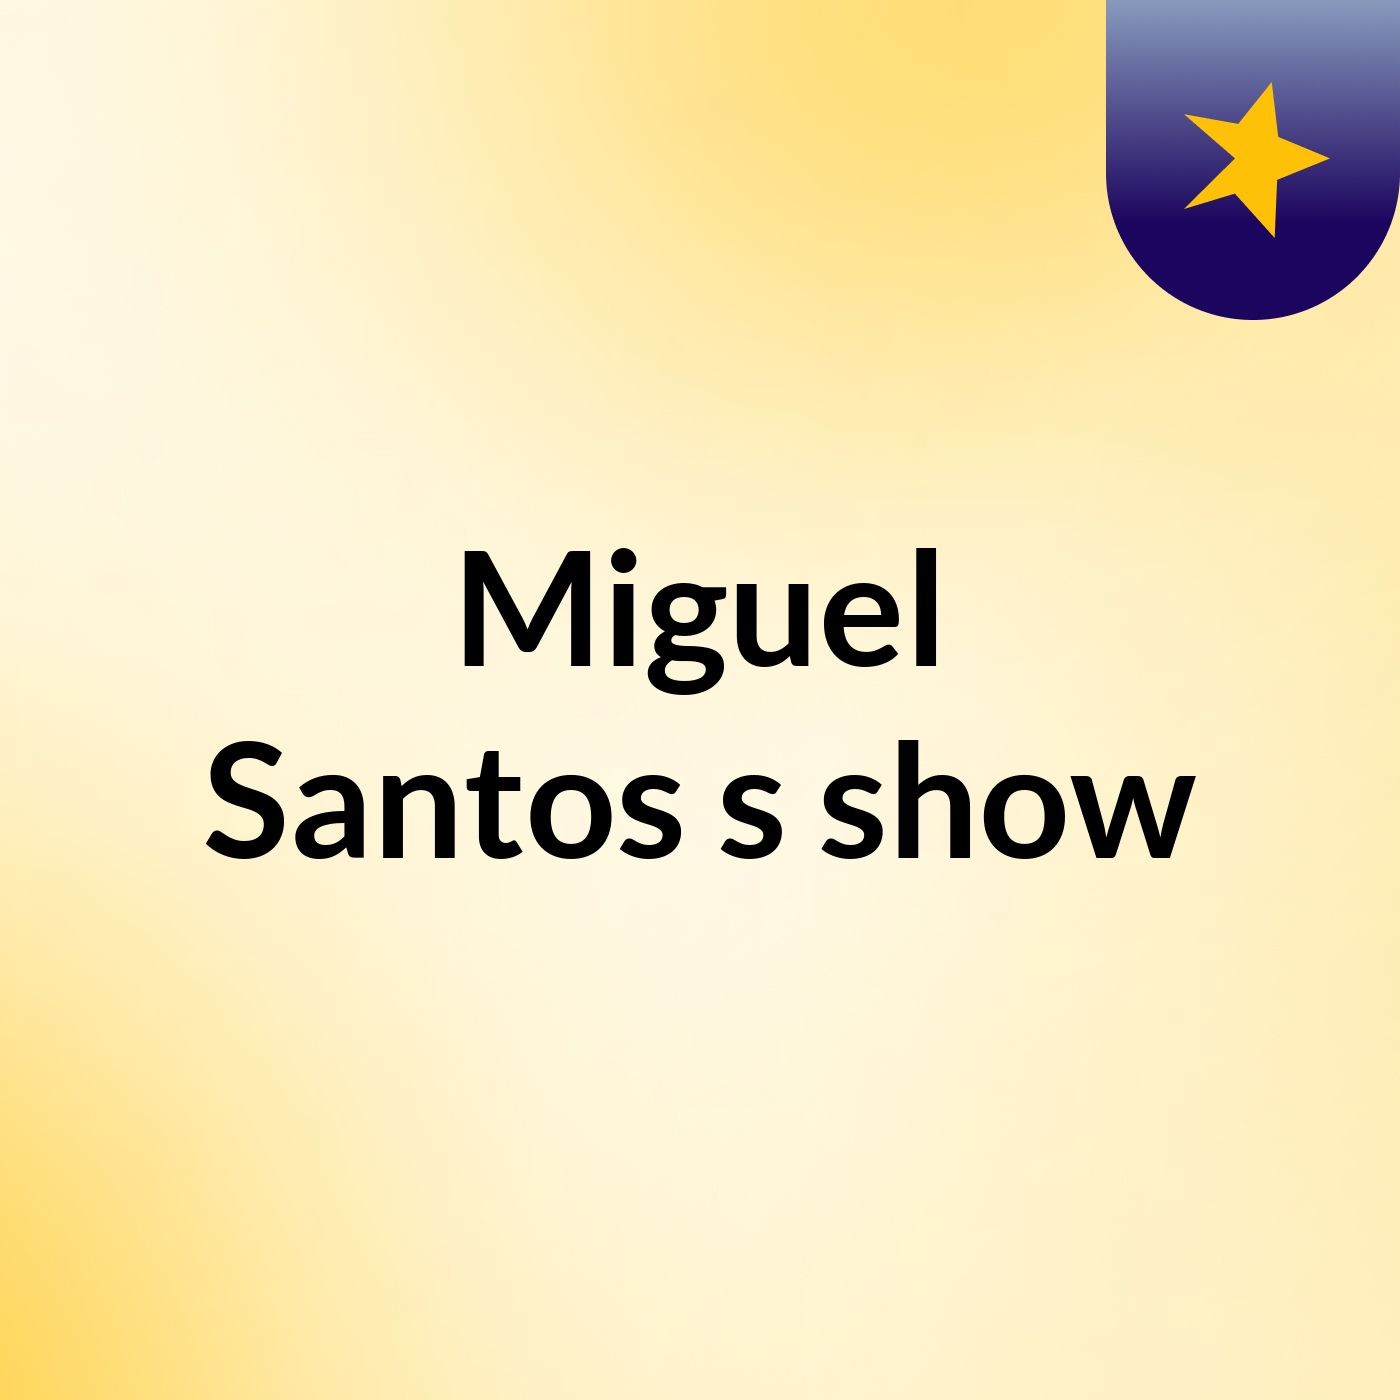 Miguel Santos's show